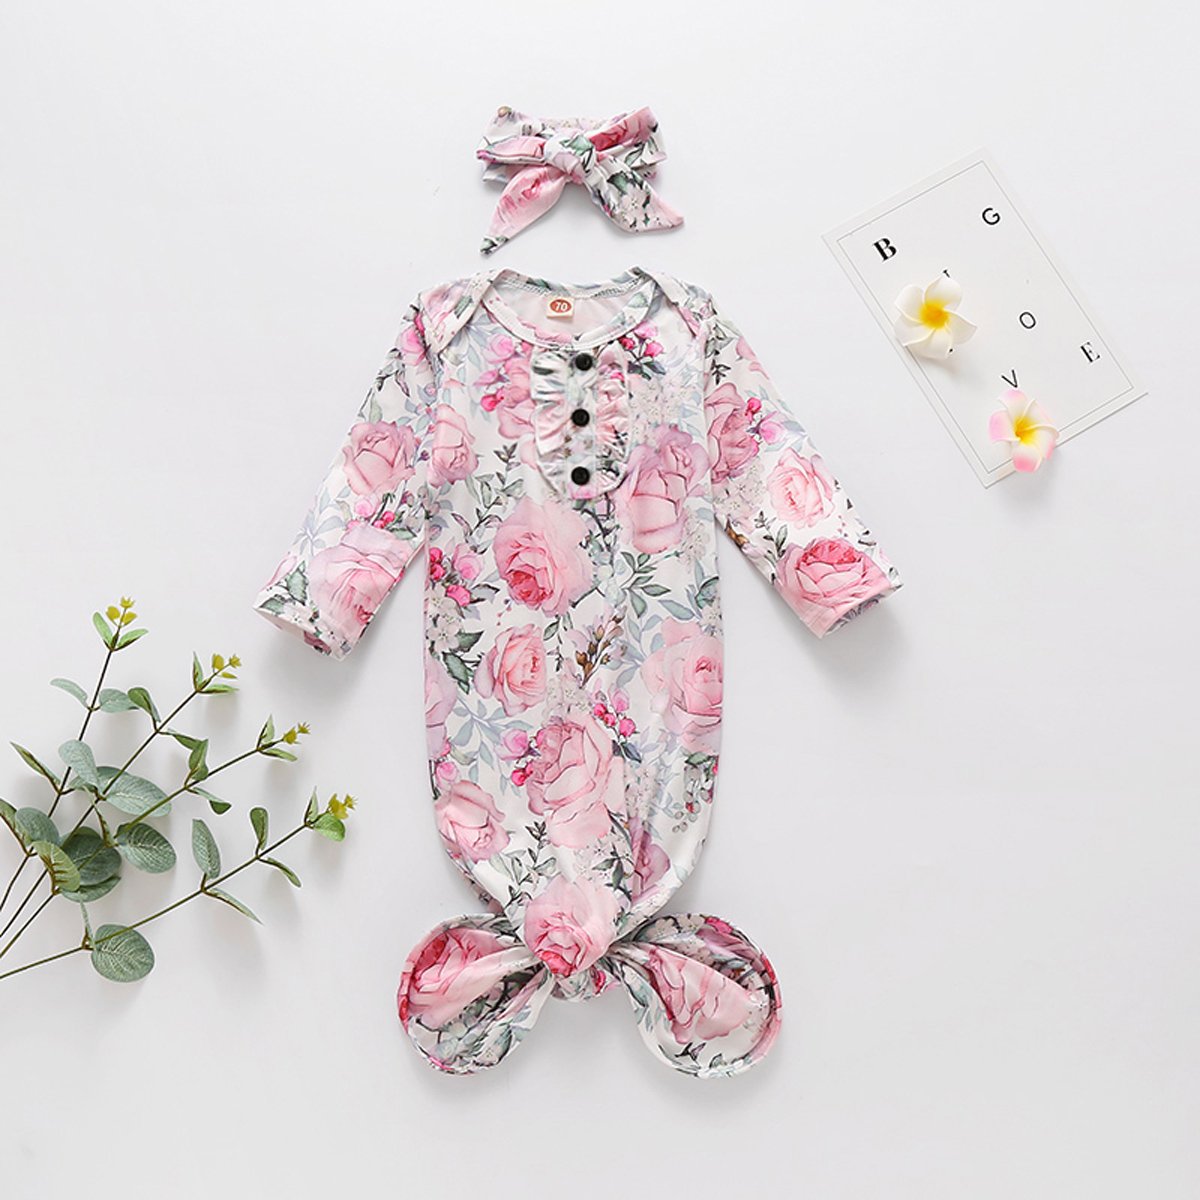 Saco de dormir para bebé recién nacido con estampado floral encantador de 2 piezas